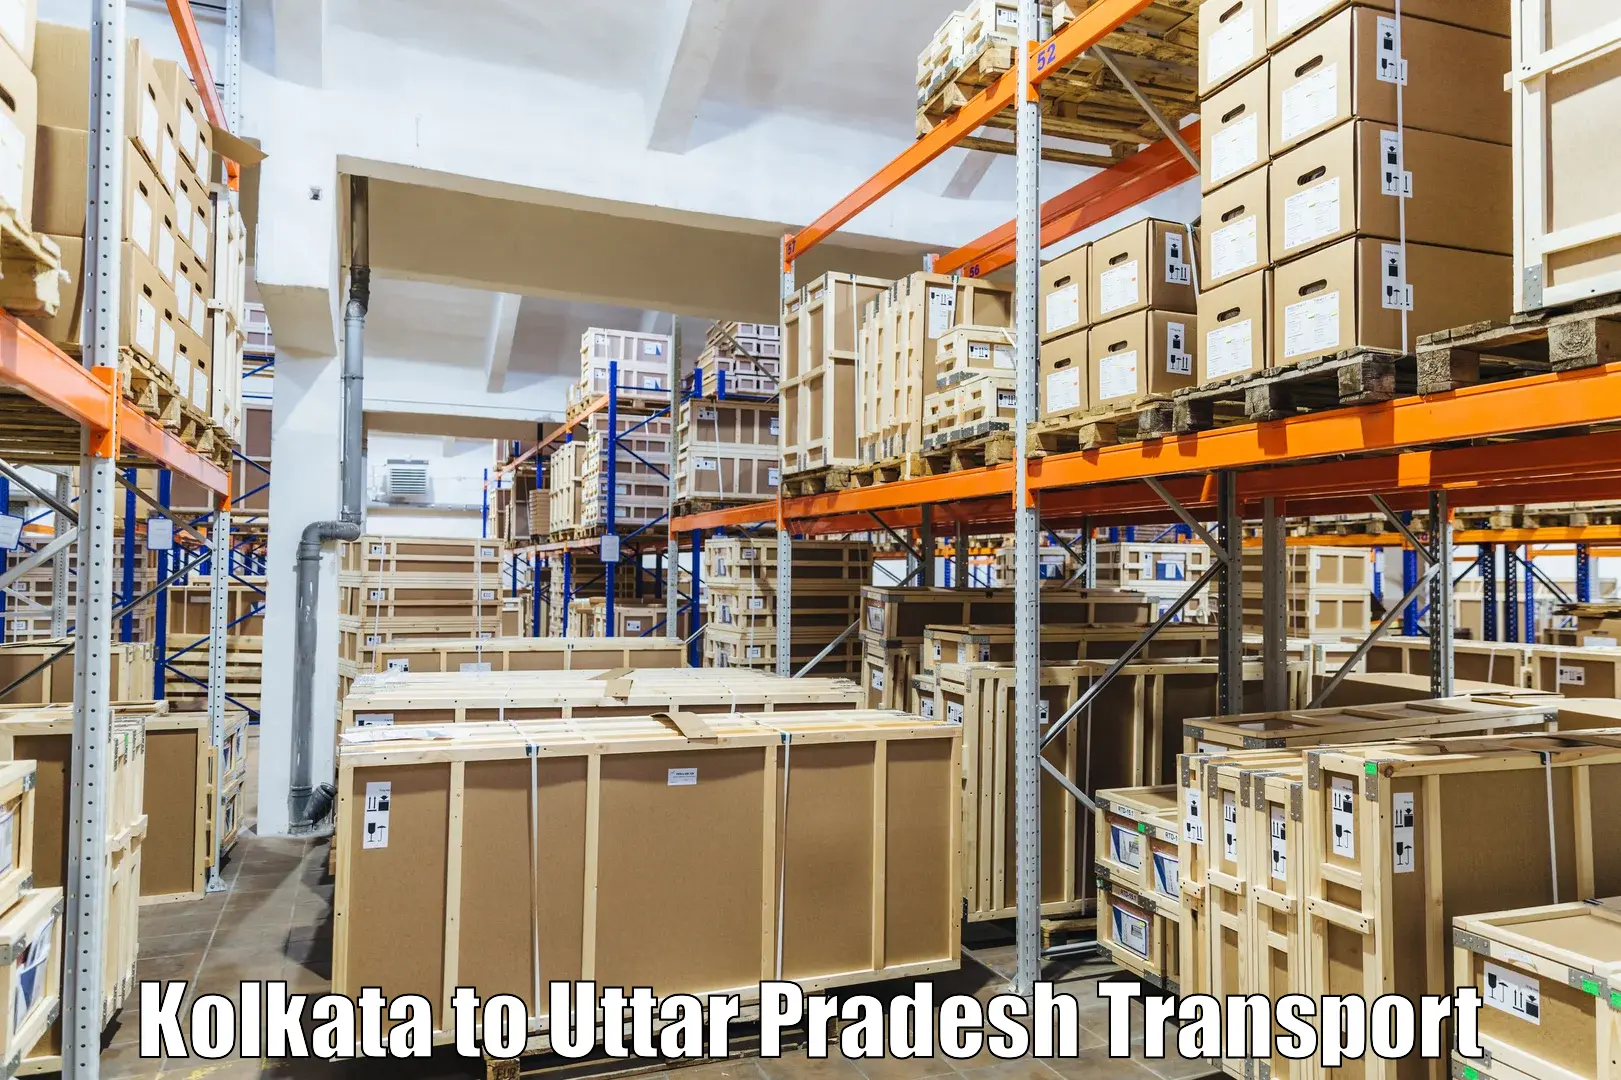 Daily parcel service transport Kolkata to Nighasan